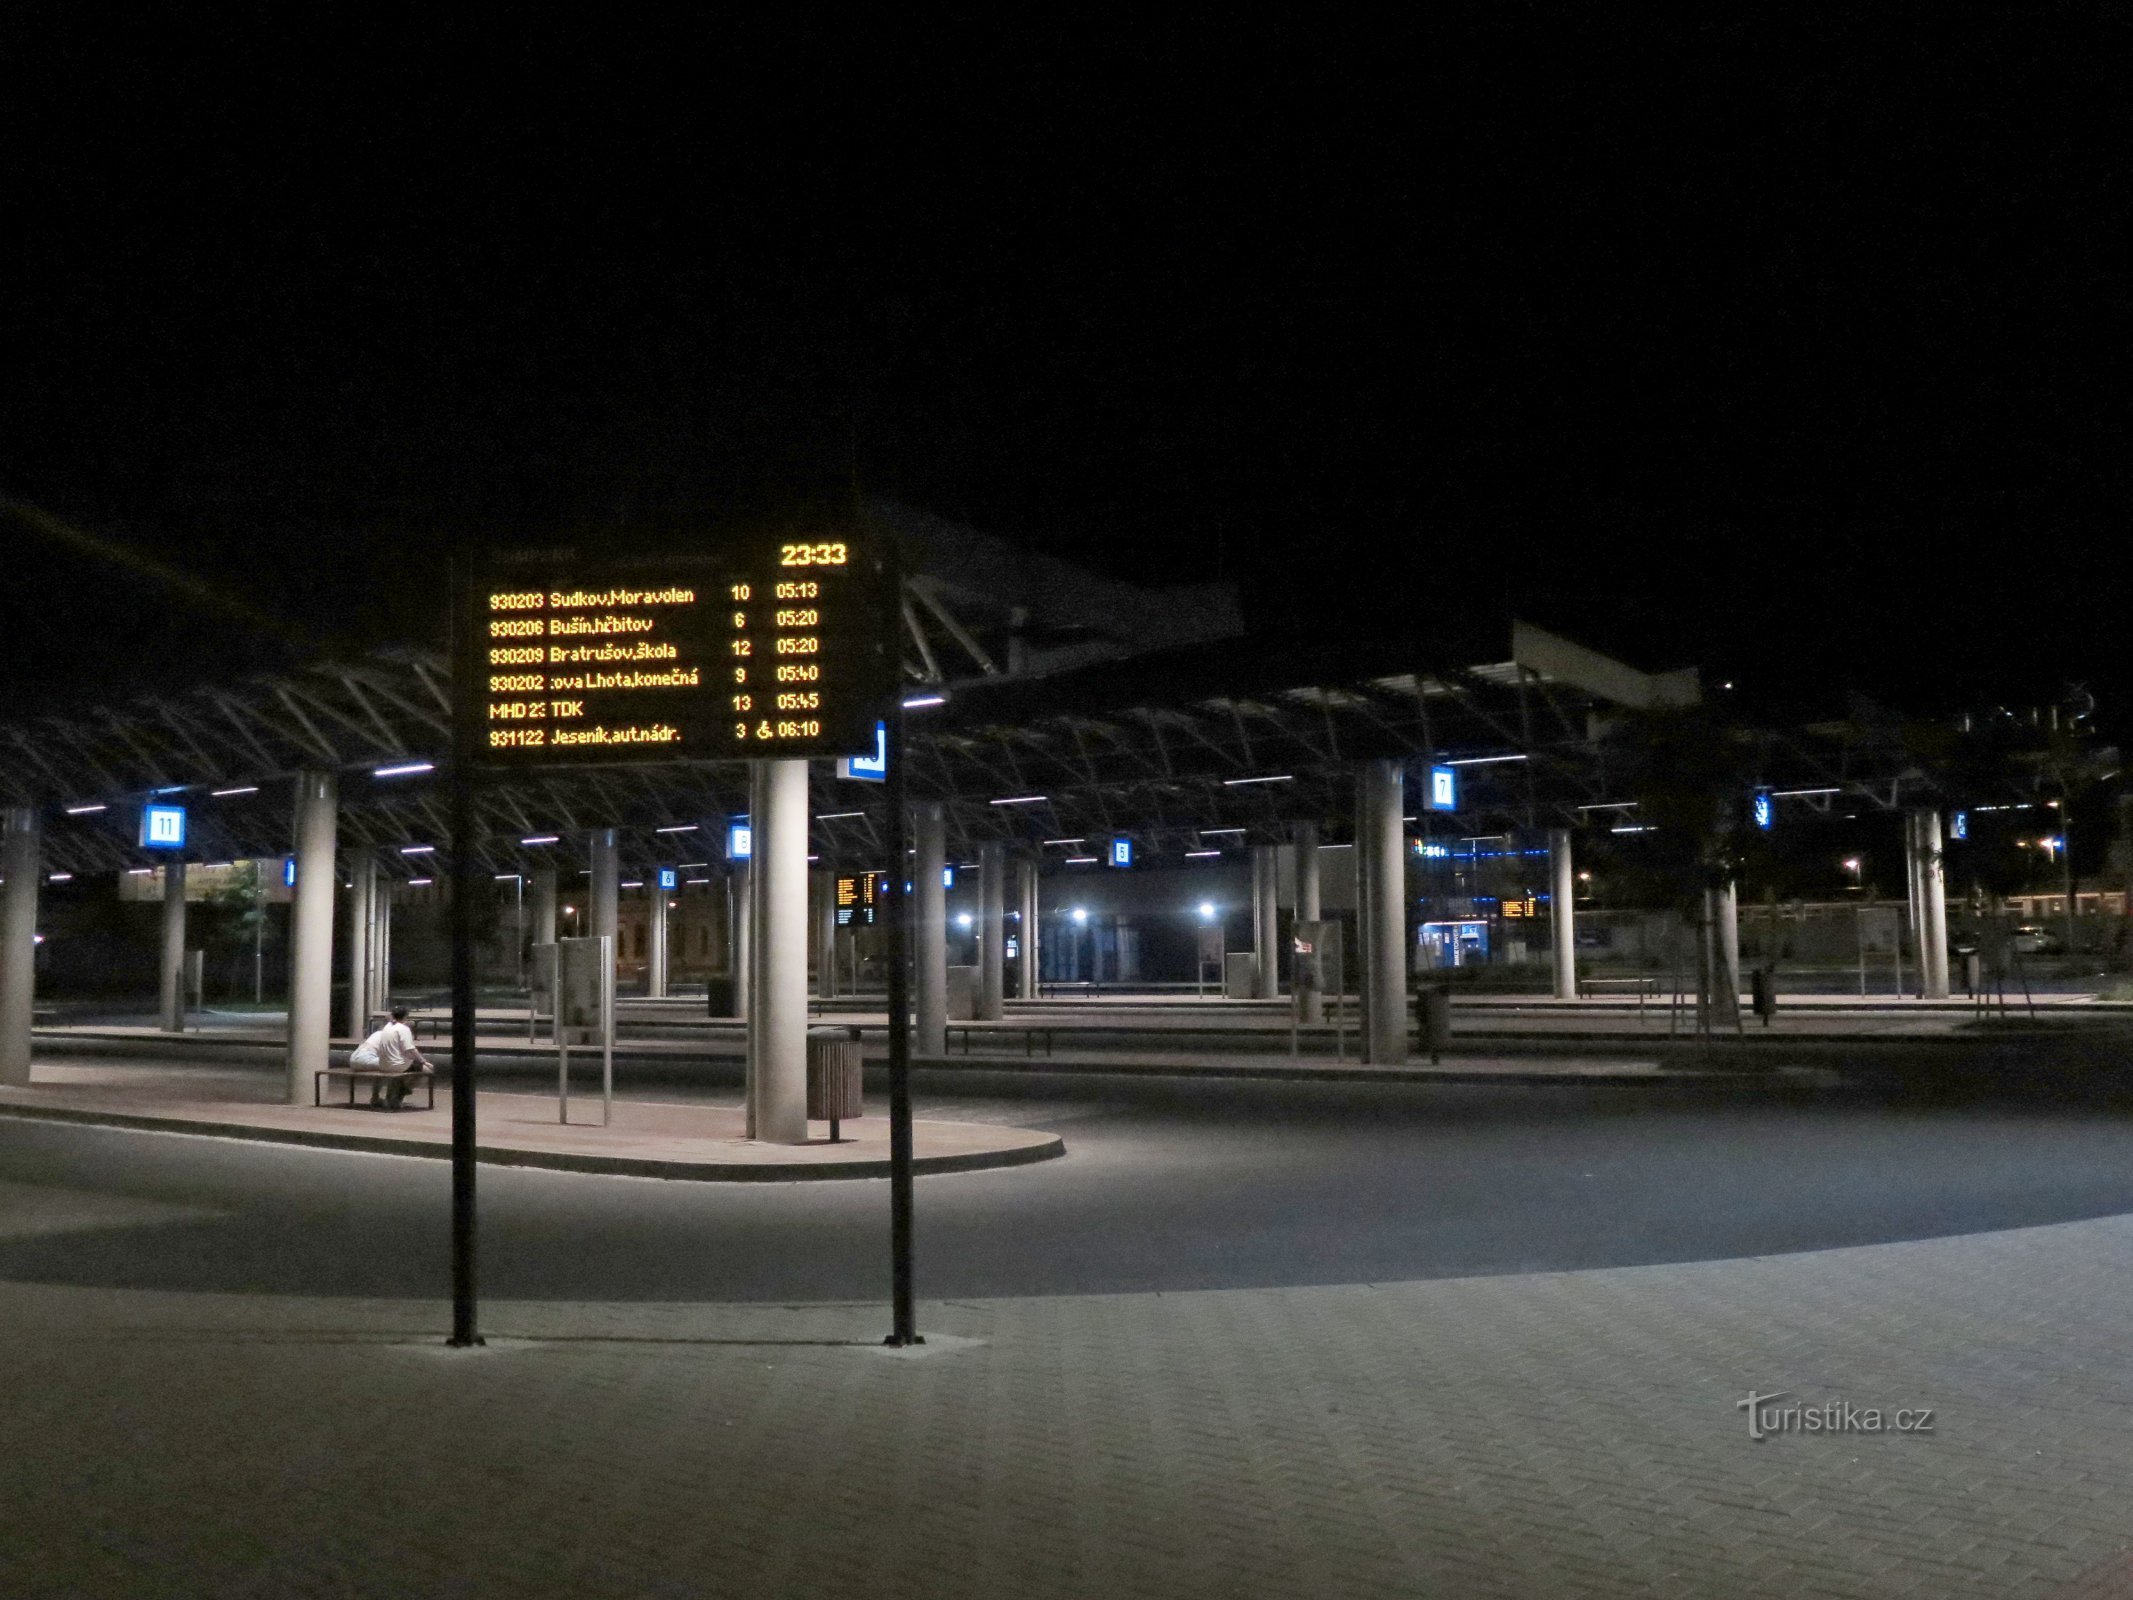 Šumperk – new bus station